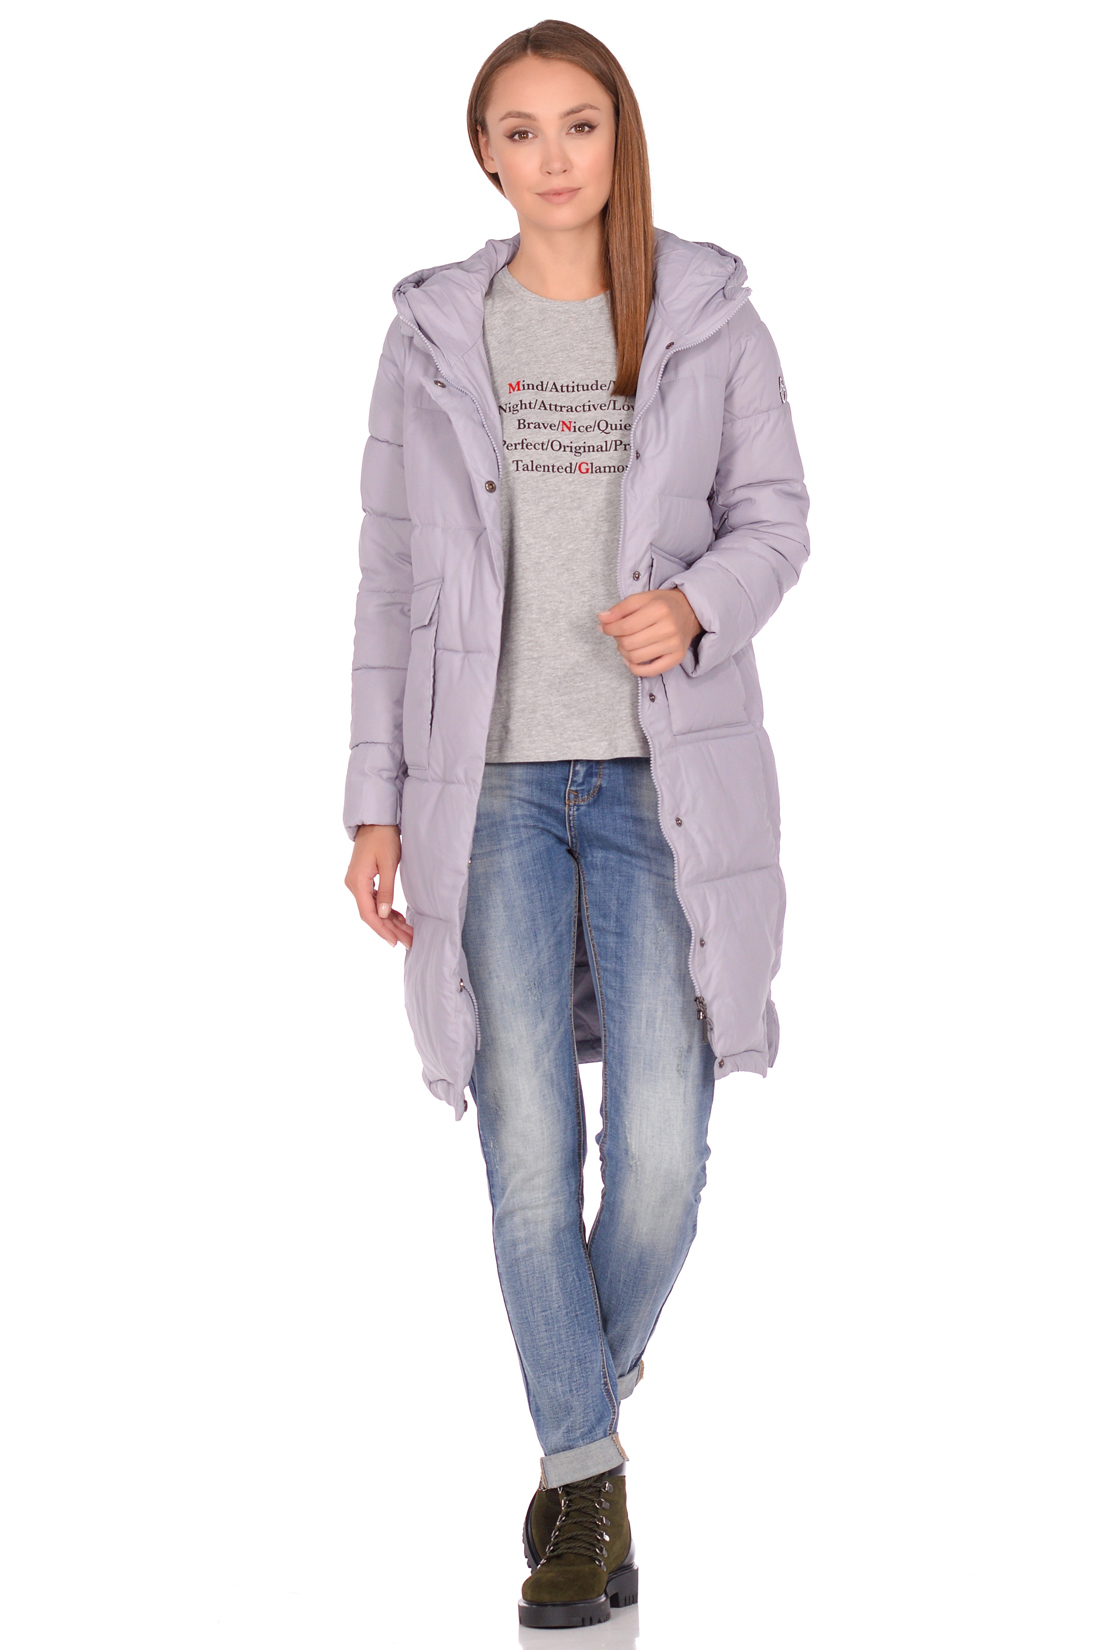 Куртка-кокон с накладными карманами (арт. baon B038582), размер XXL, цвет сиреневый Куртка-кокон с накладными карманами (арт. baon B038582) - фото 5